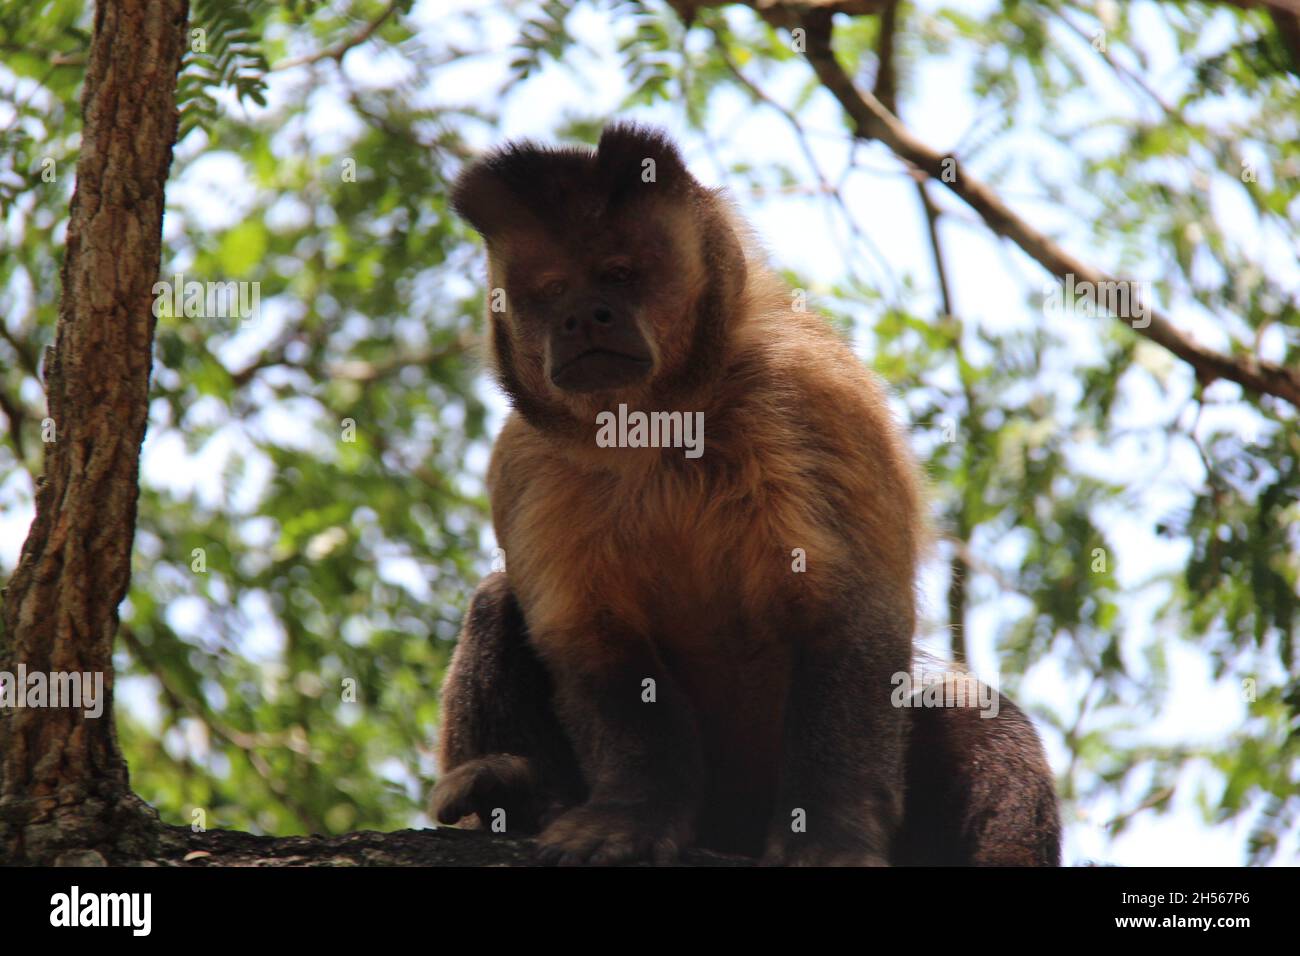 Singe assis sur un tronc d'arbre regardant l'appareil photo avec un arrière-plan flou.Bonito - Mato Grosso do Sul - Brésil. Banque D'Images